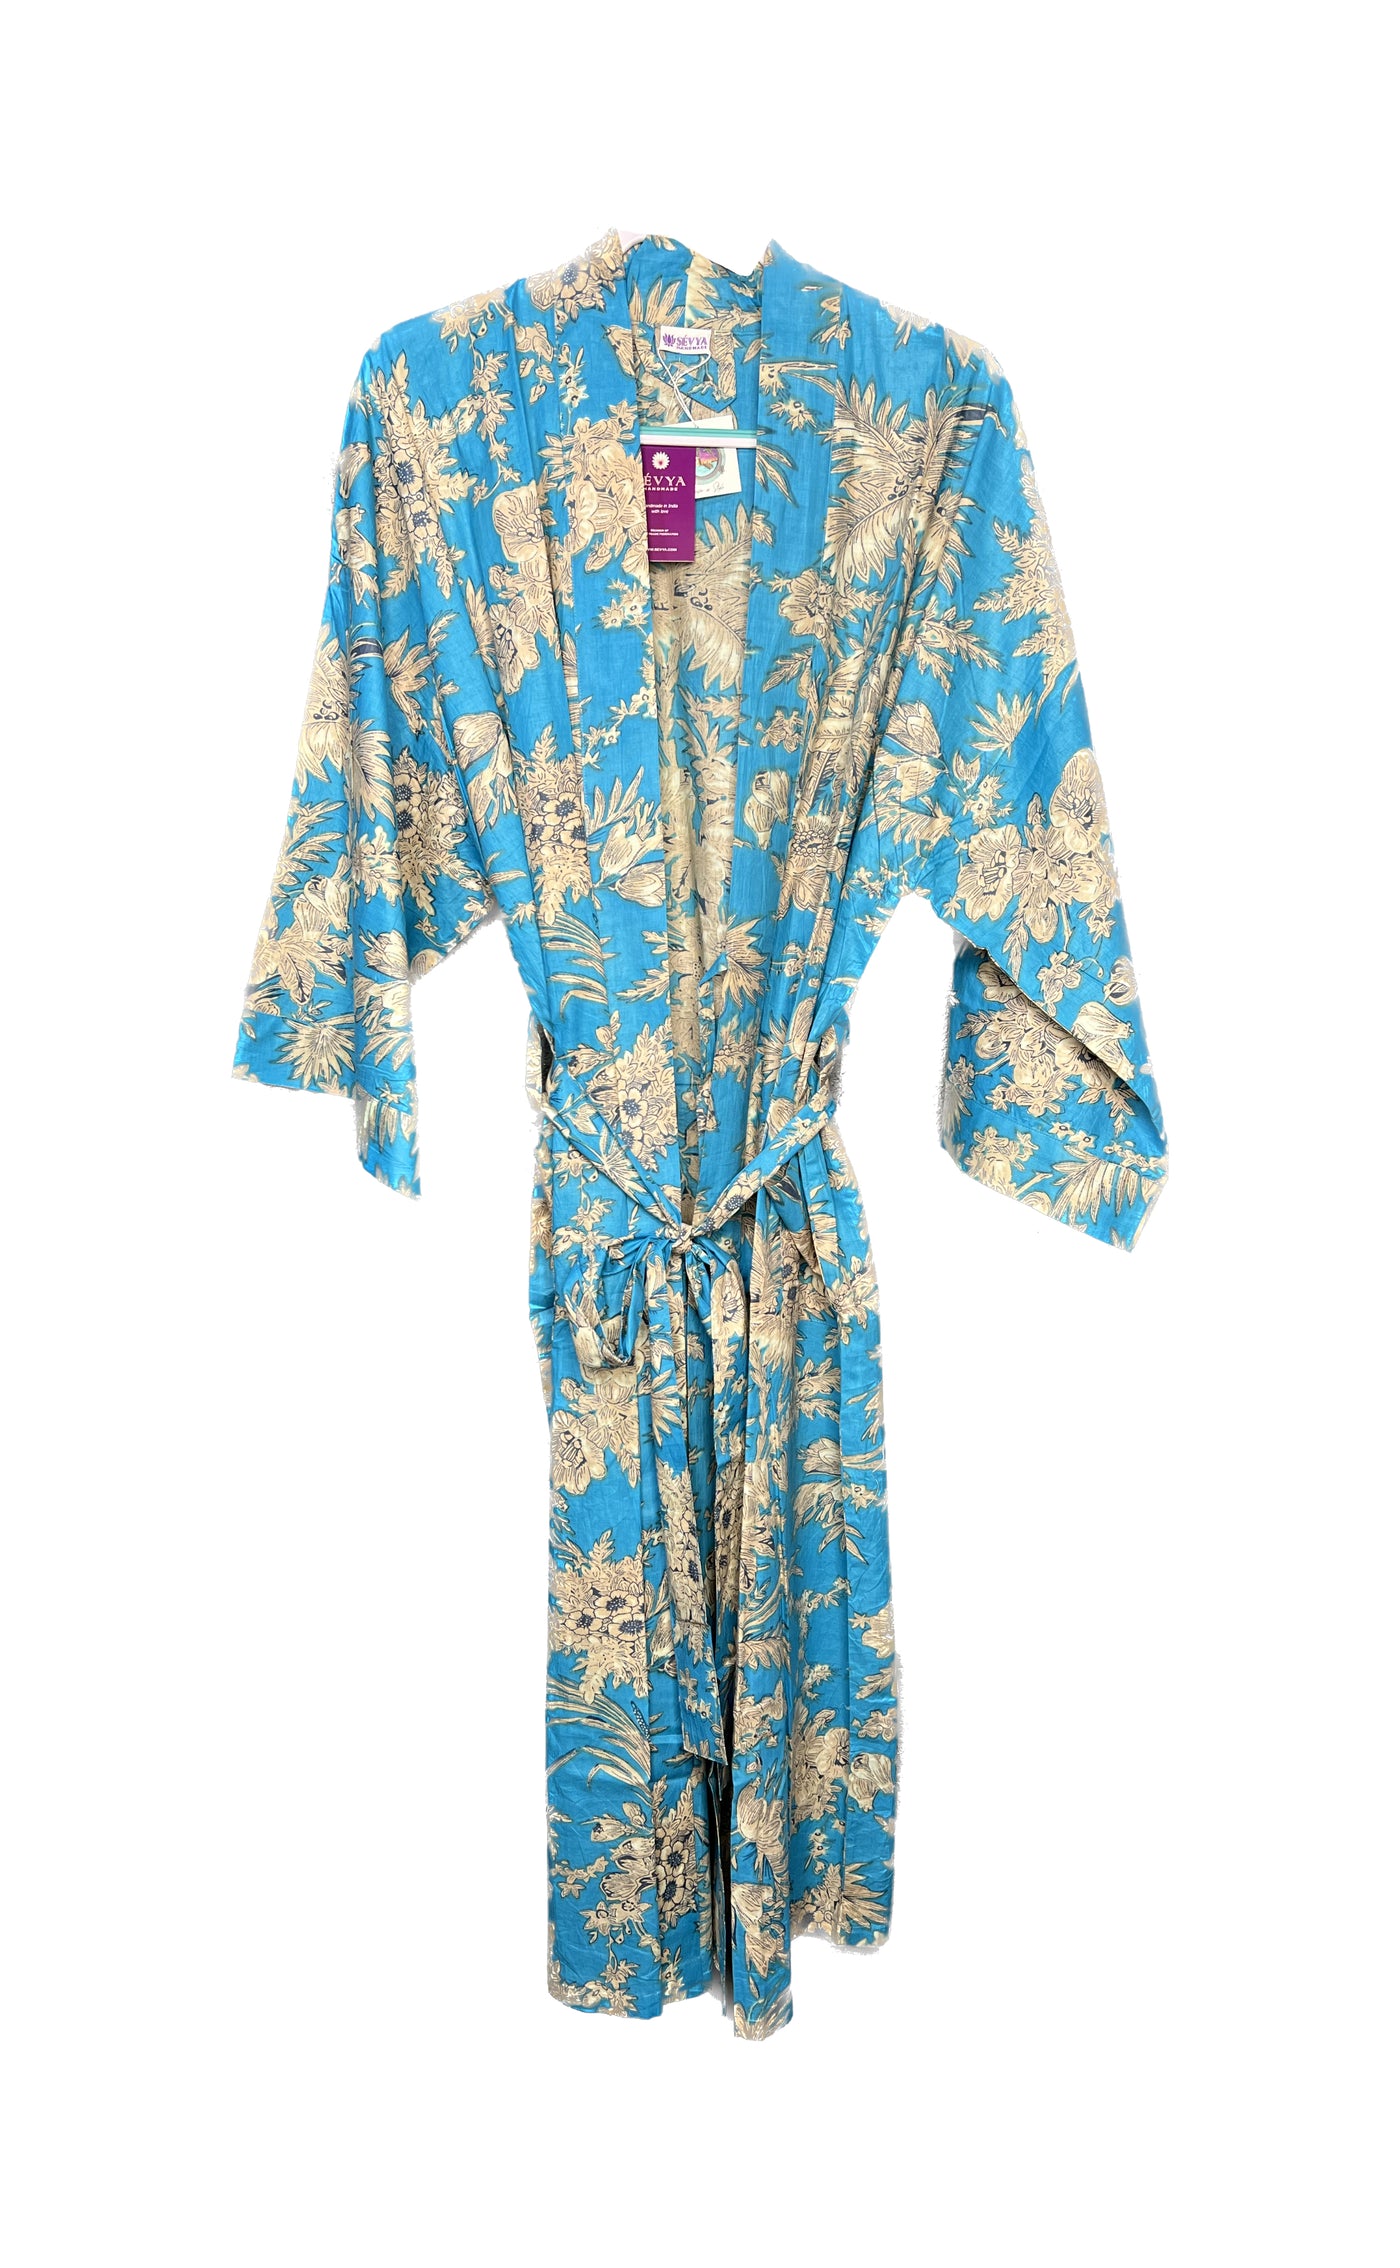 Turquoise and Gold Cotton Kimono Robes